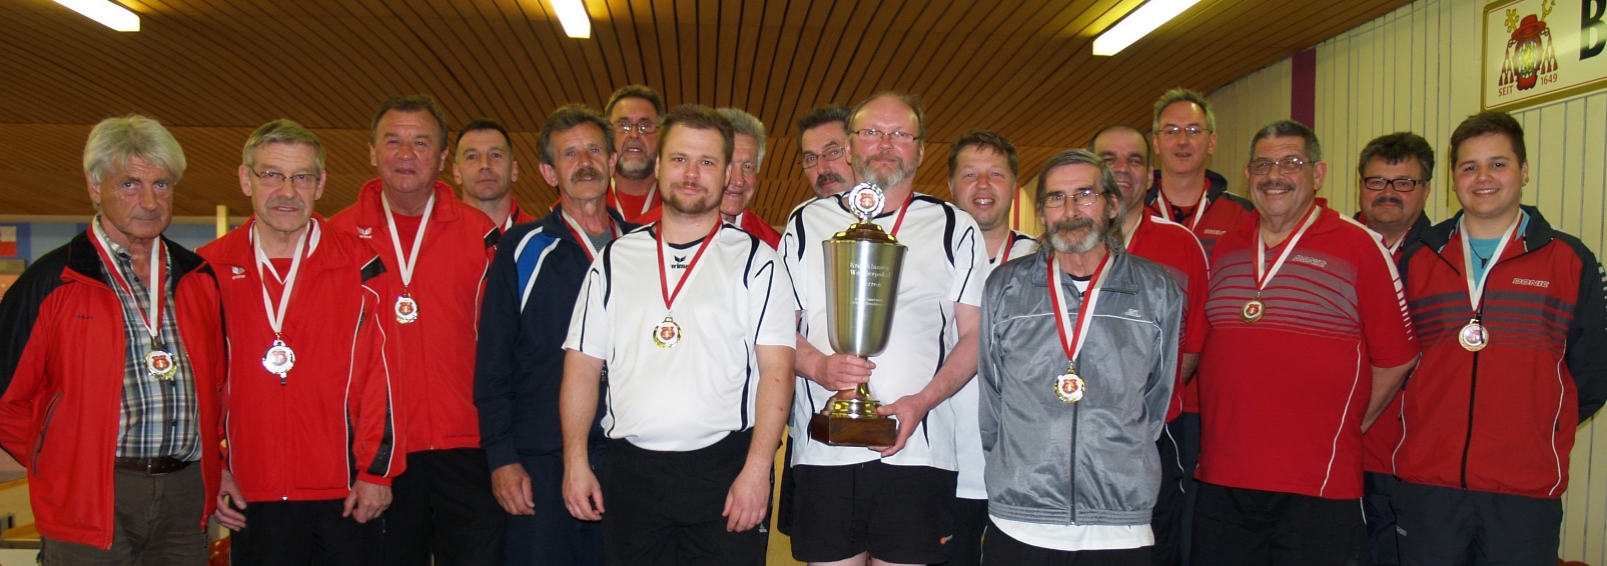 KK-Pokal 2014 Männer 6-er 1. KC Stadtamhof, 2. SG Walhalla 2, 3. TSV Deuerling 3